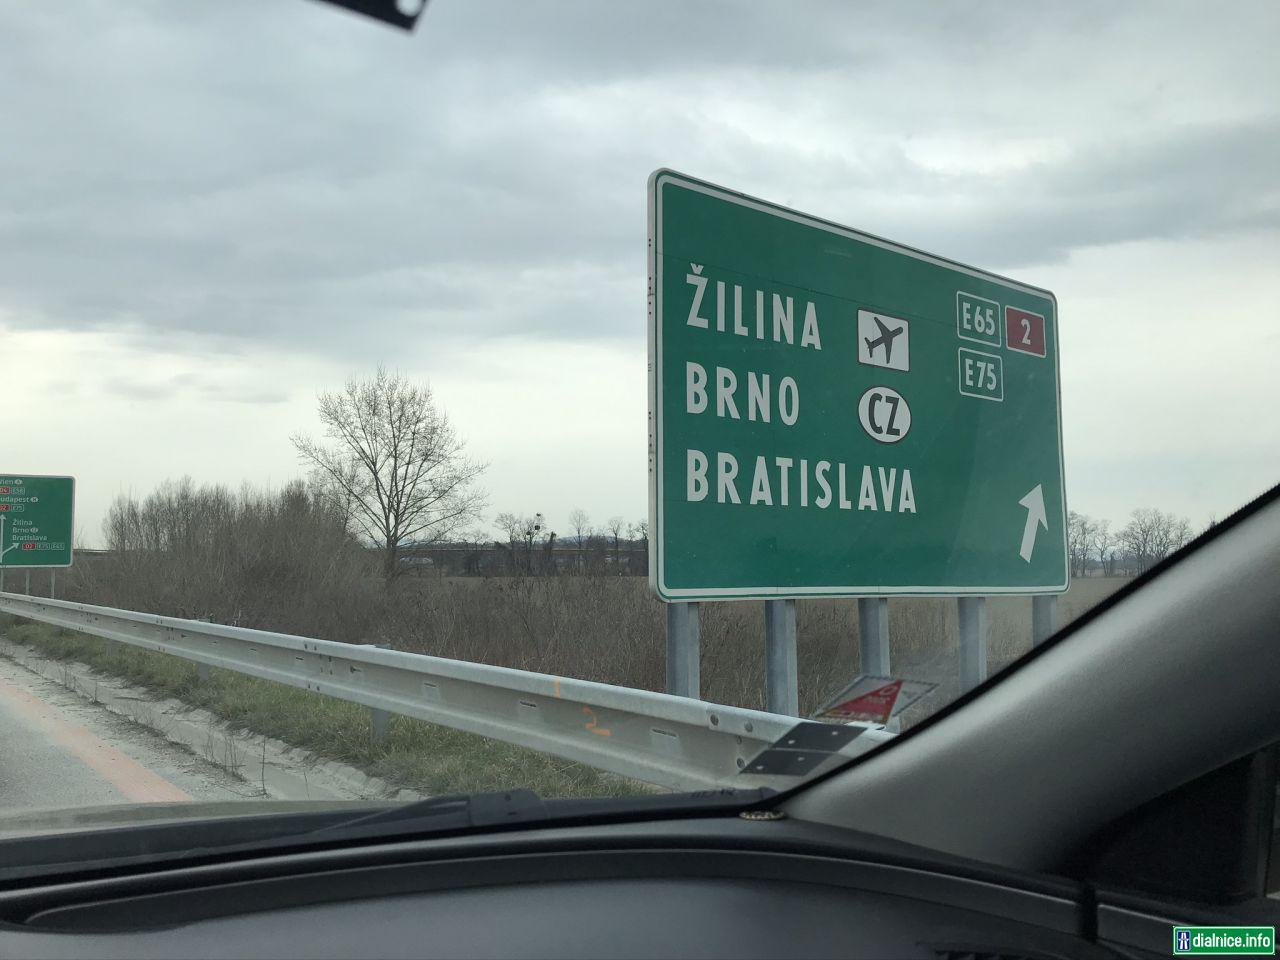 Budúca D4 a zjazd na D2 smer Bratislava - gigantická smerová tabuľa zamenená za novú mikroTERNovú